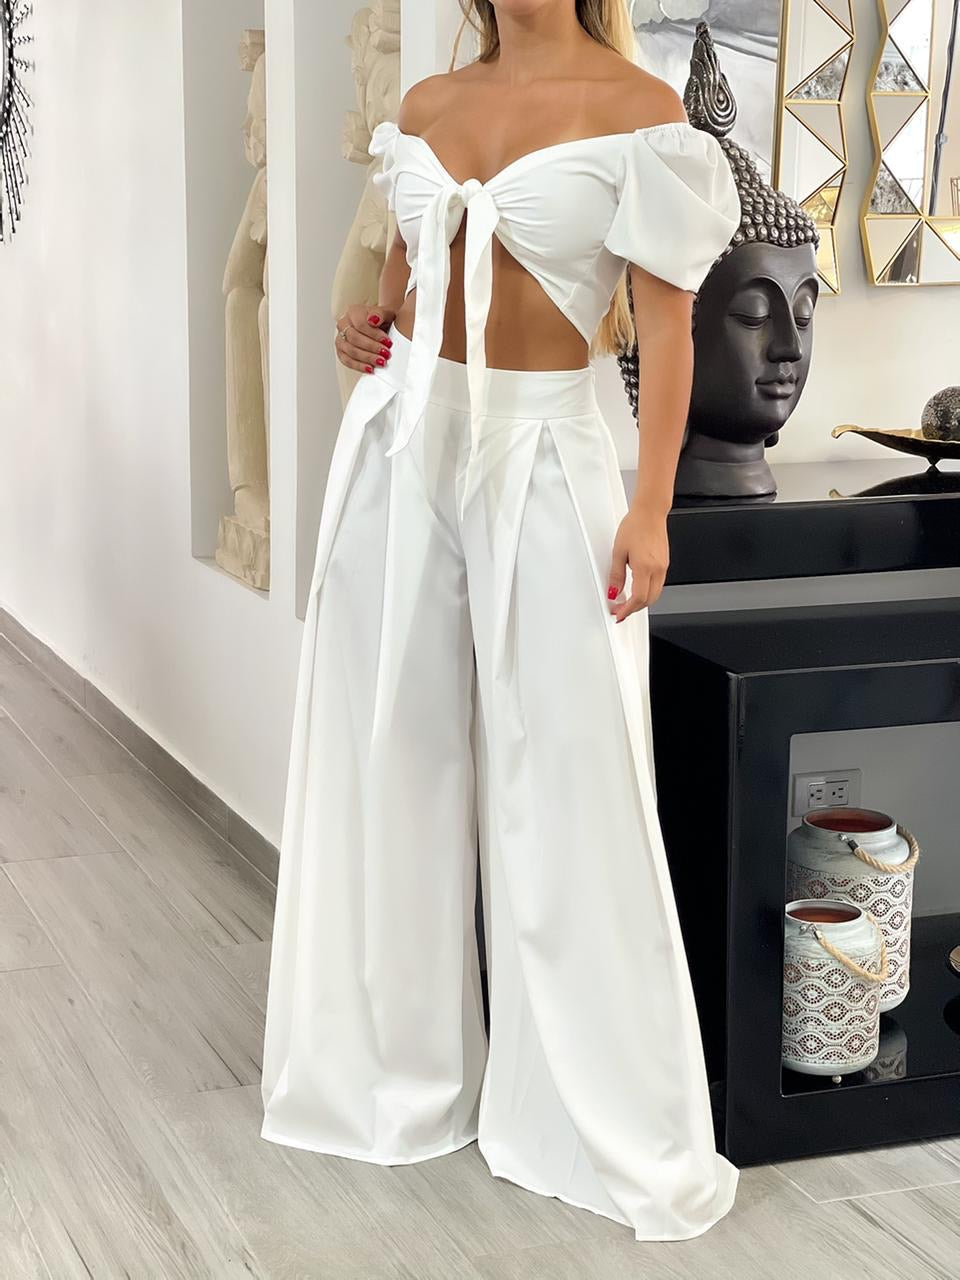 Pantalón palazzo color blanco para mujer, ideal para un look moderno y distinguido.